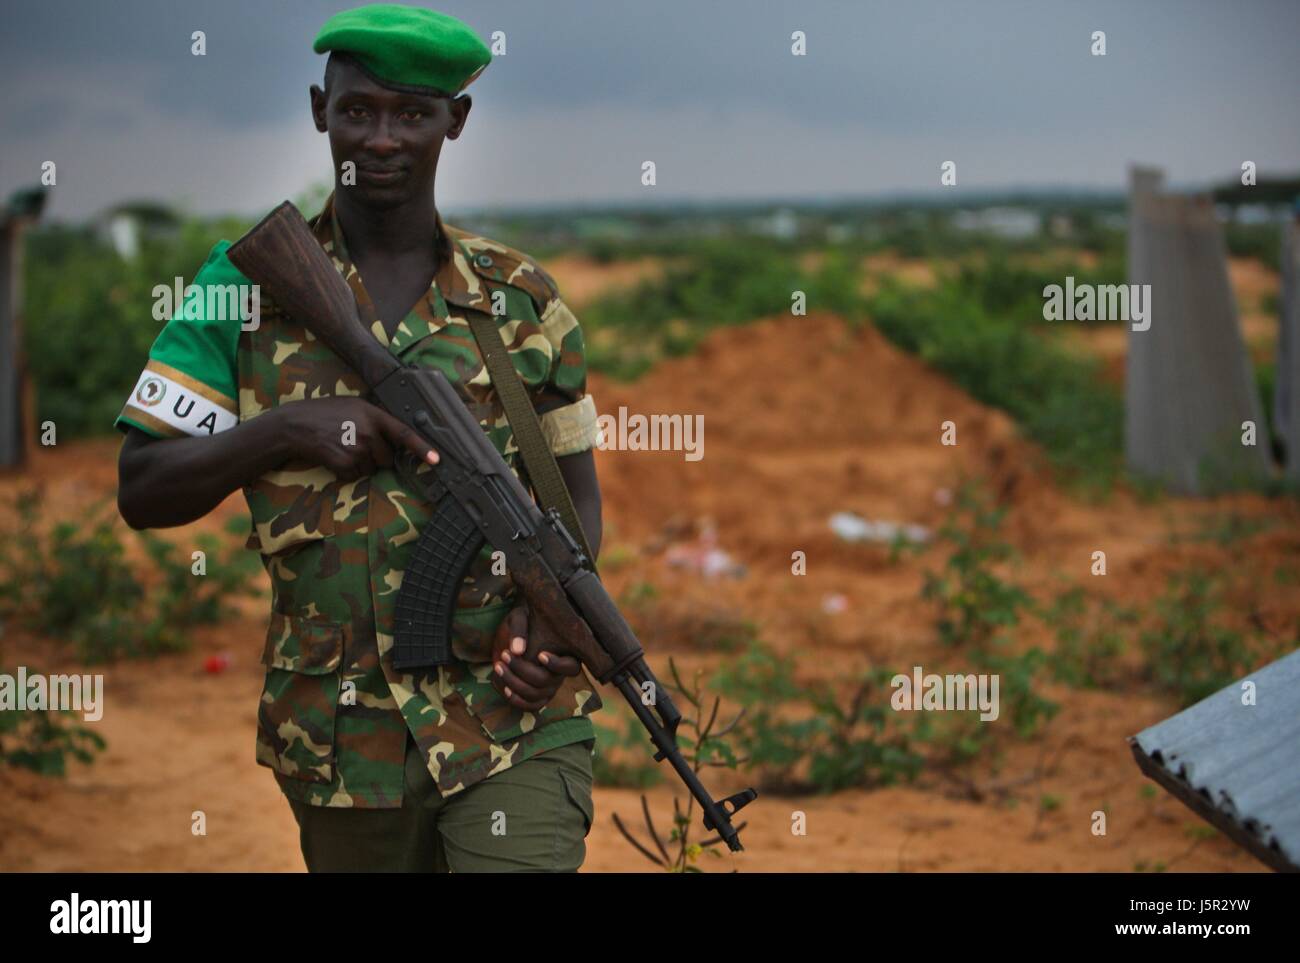 Une mission de l'Union africaine en Somalie (AMISOM) soldat burundais le front des patrouilles dans un territoire récemment capturés dans les insurgés dans le district de Deynile, le 17 novembre 2011 près de Mogadiscio, en Somalie. (Photo par Stuart Price/ANISOM par Planetpix) Banque D'Images